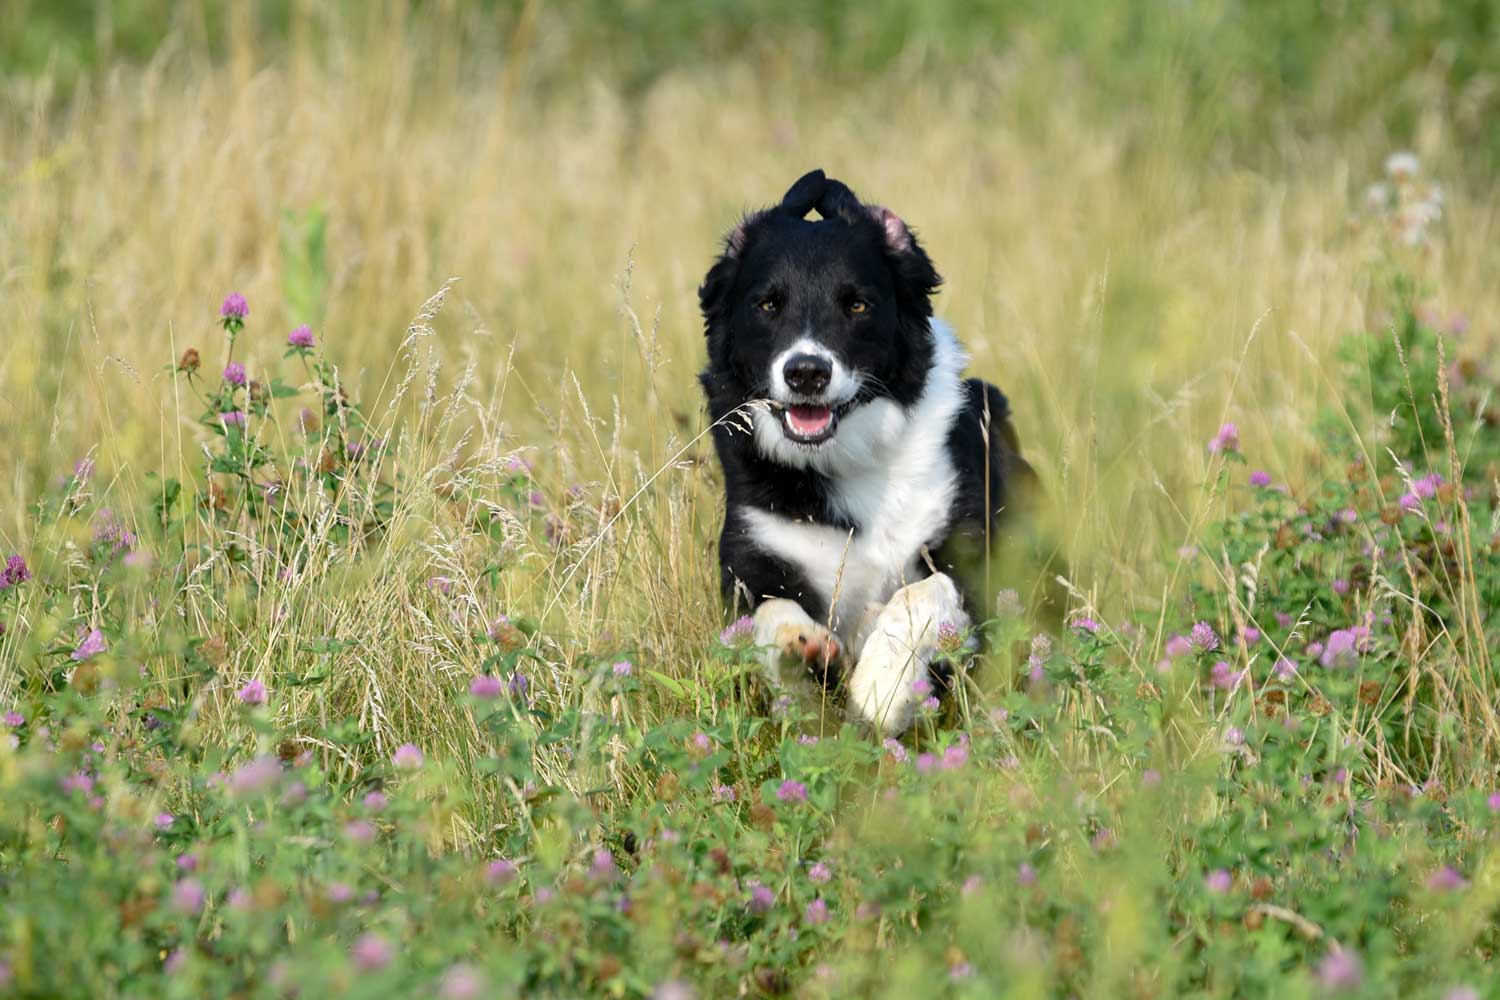 A dog running through long grass.